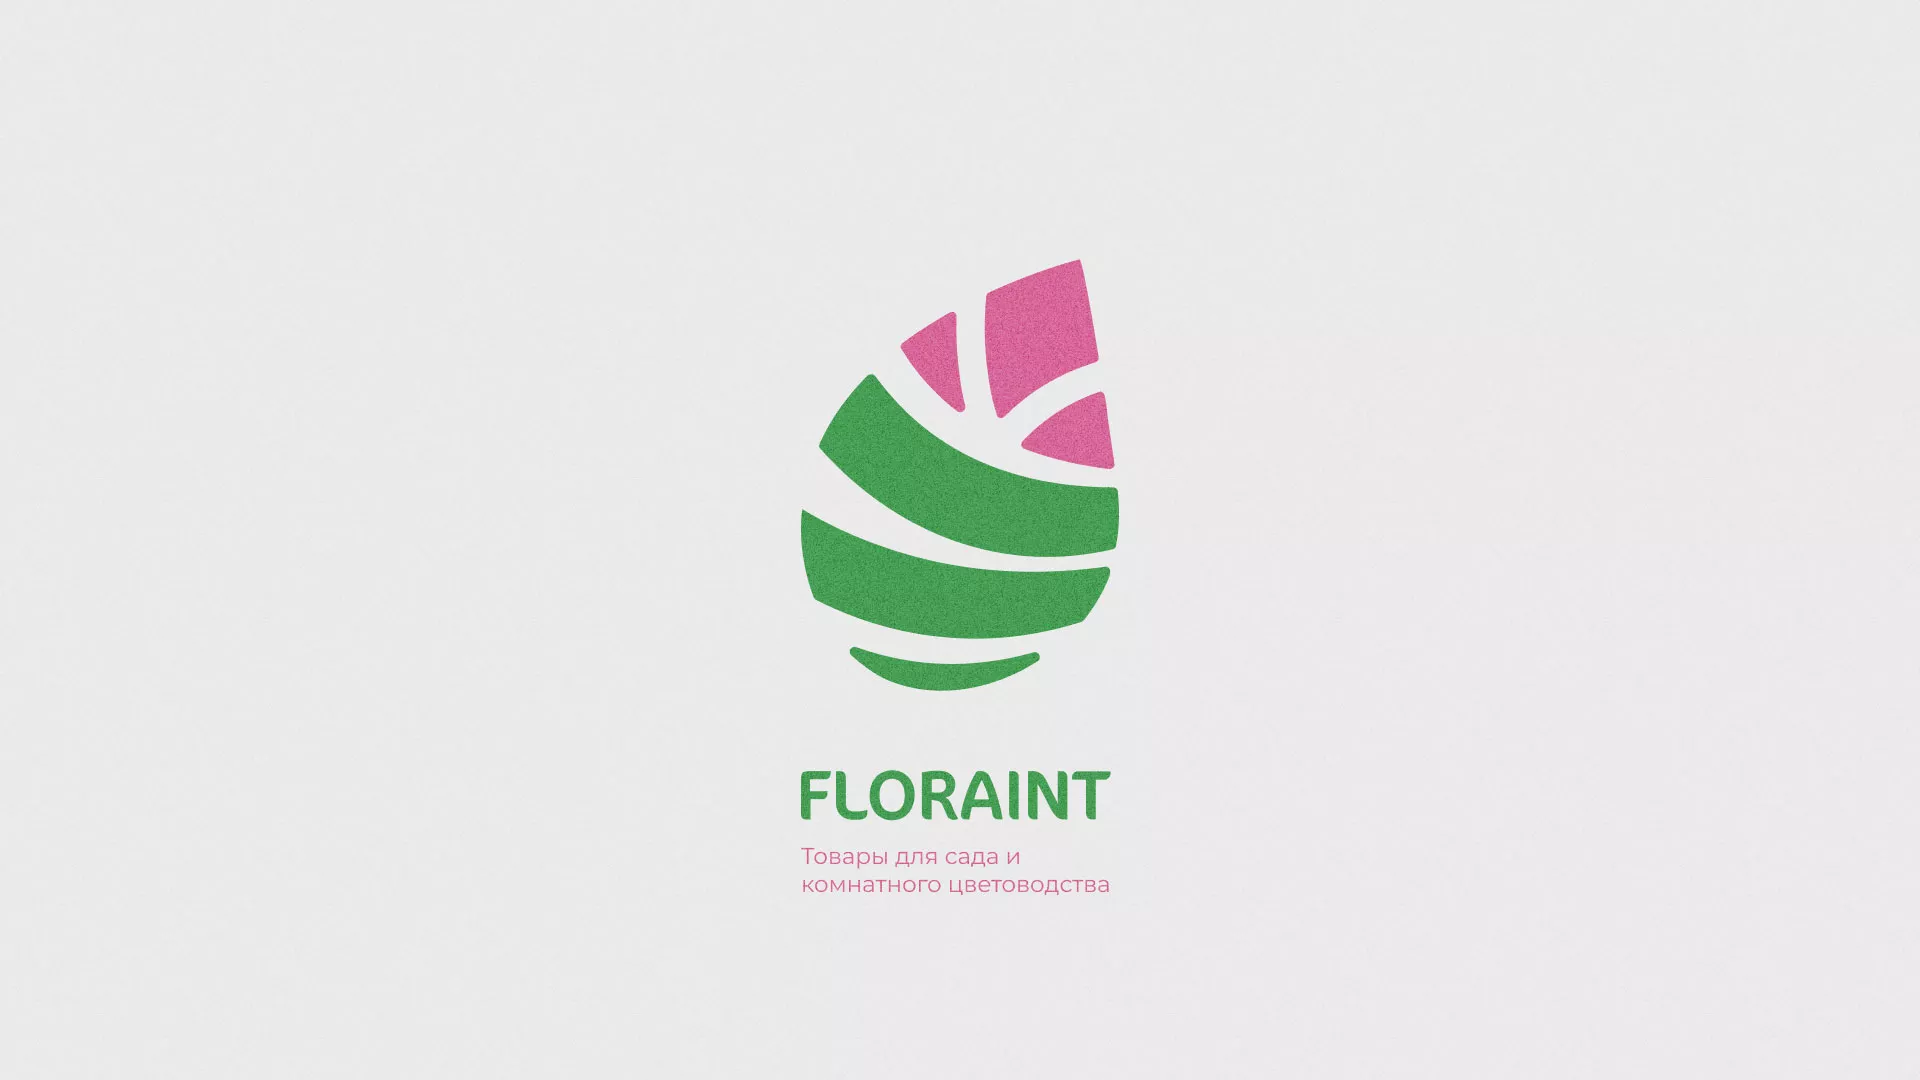 Разработка оформления профиля Instagram для магазина «Floraint» в Туле